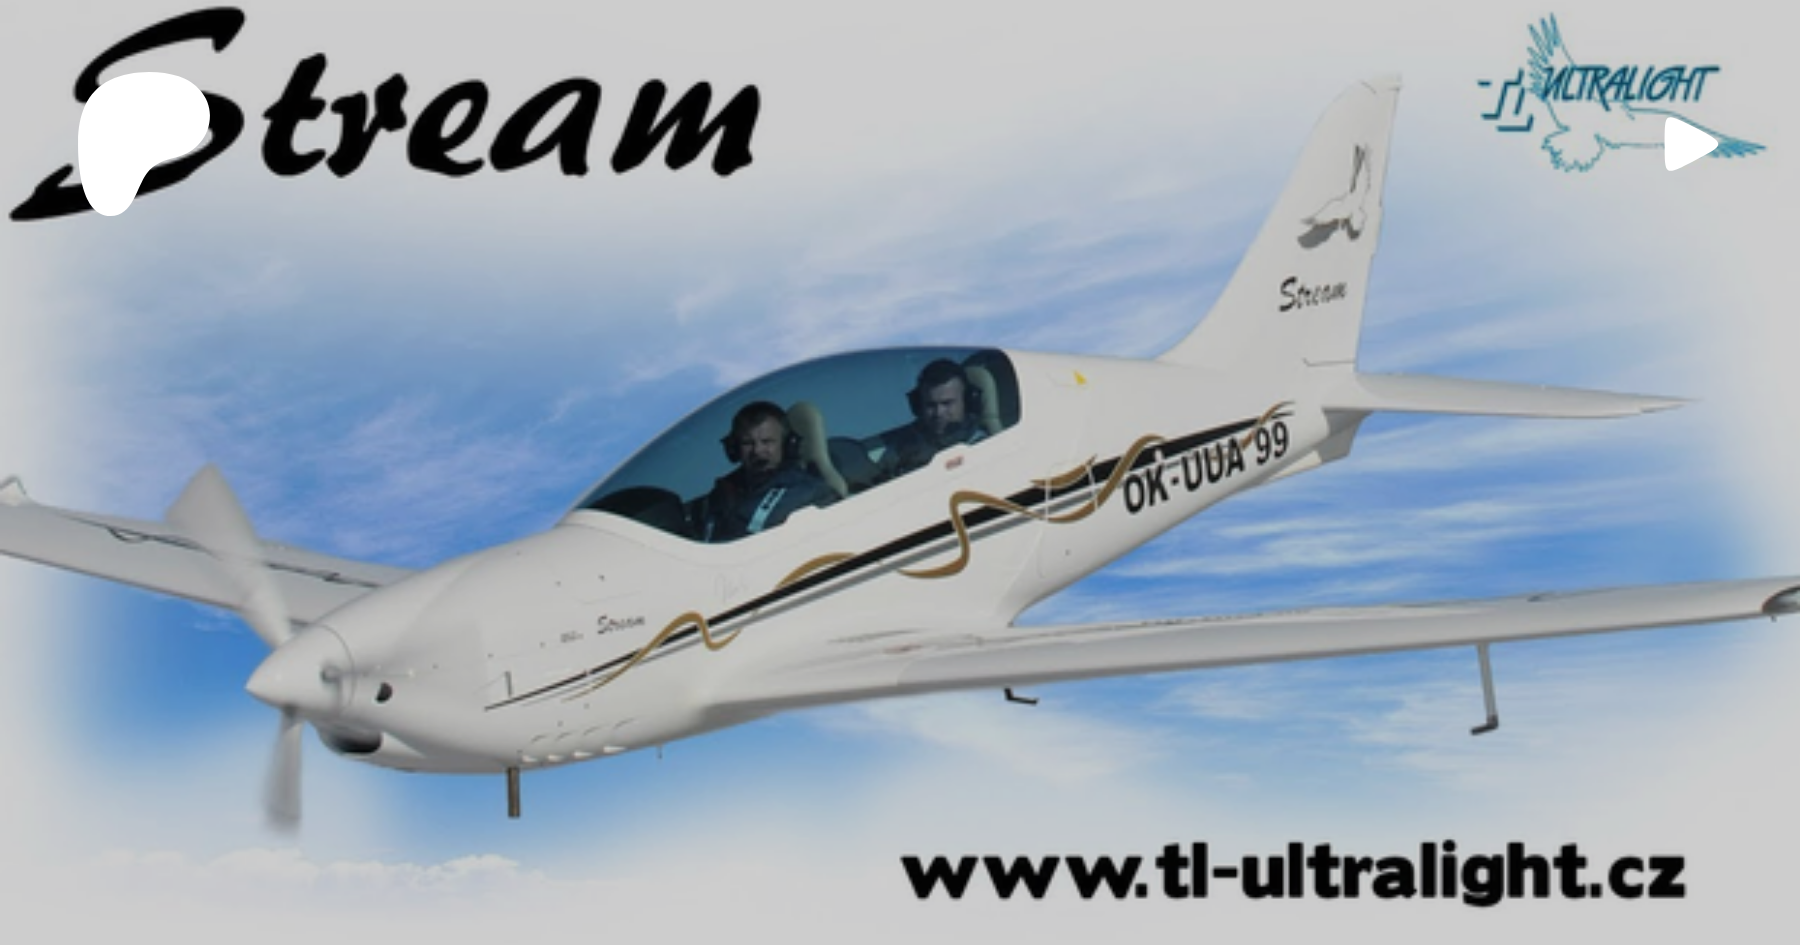 Stream - TL-ULTRALIGHT Aircraft